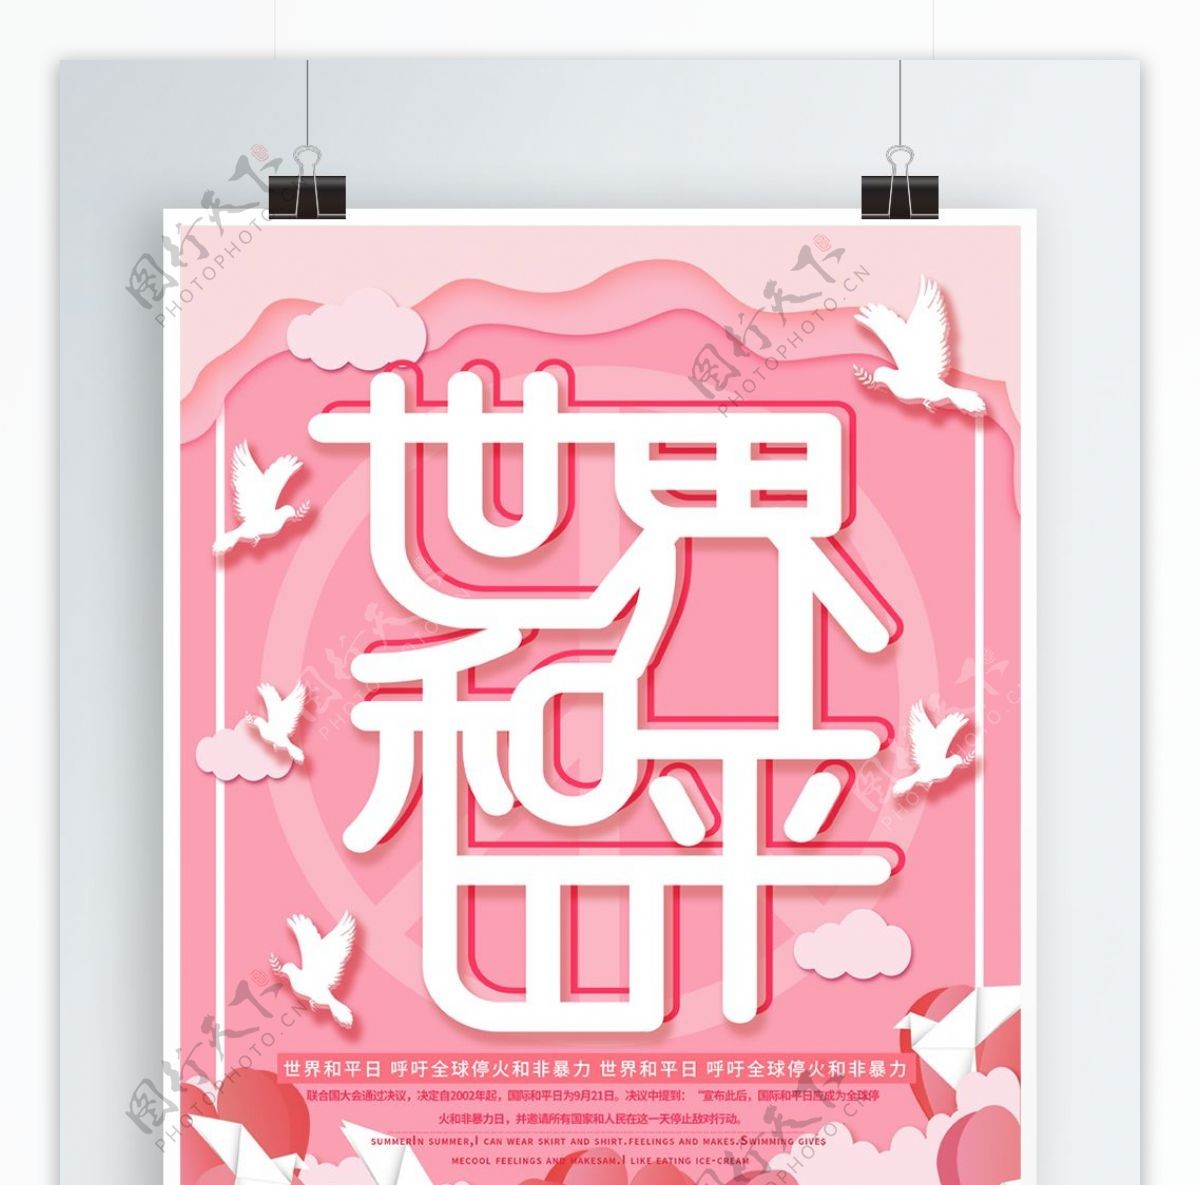 粉色微立体纸片风世界和平日海报